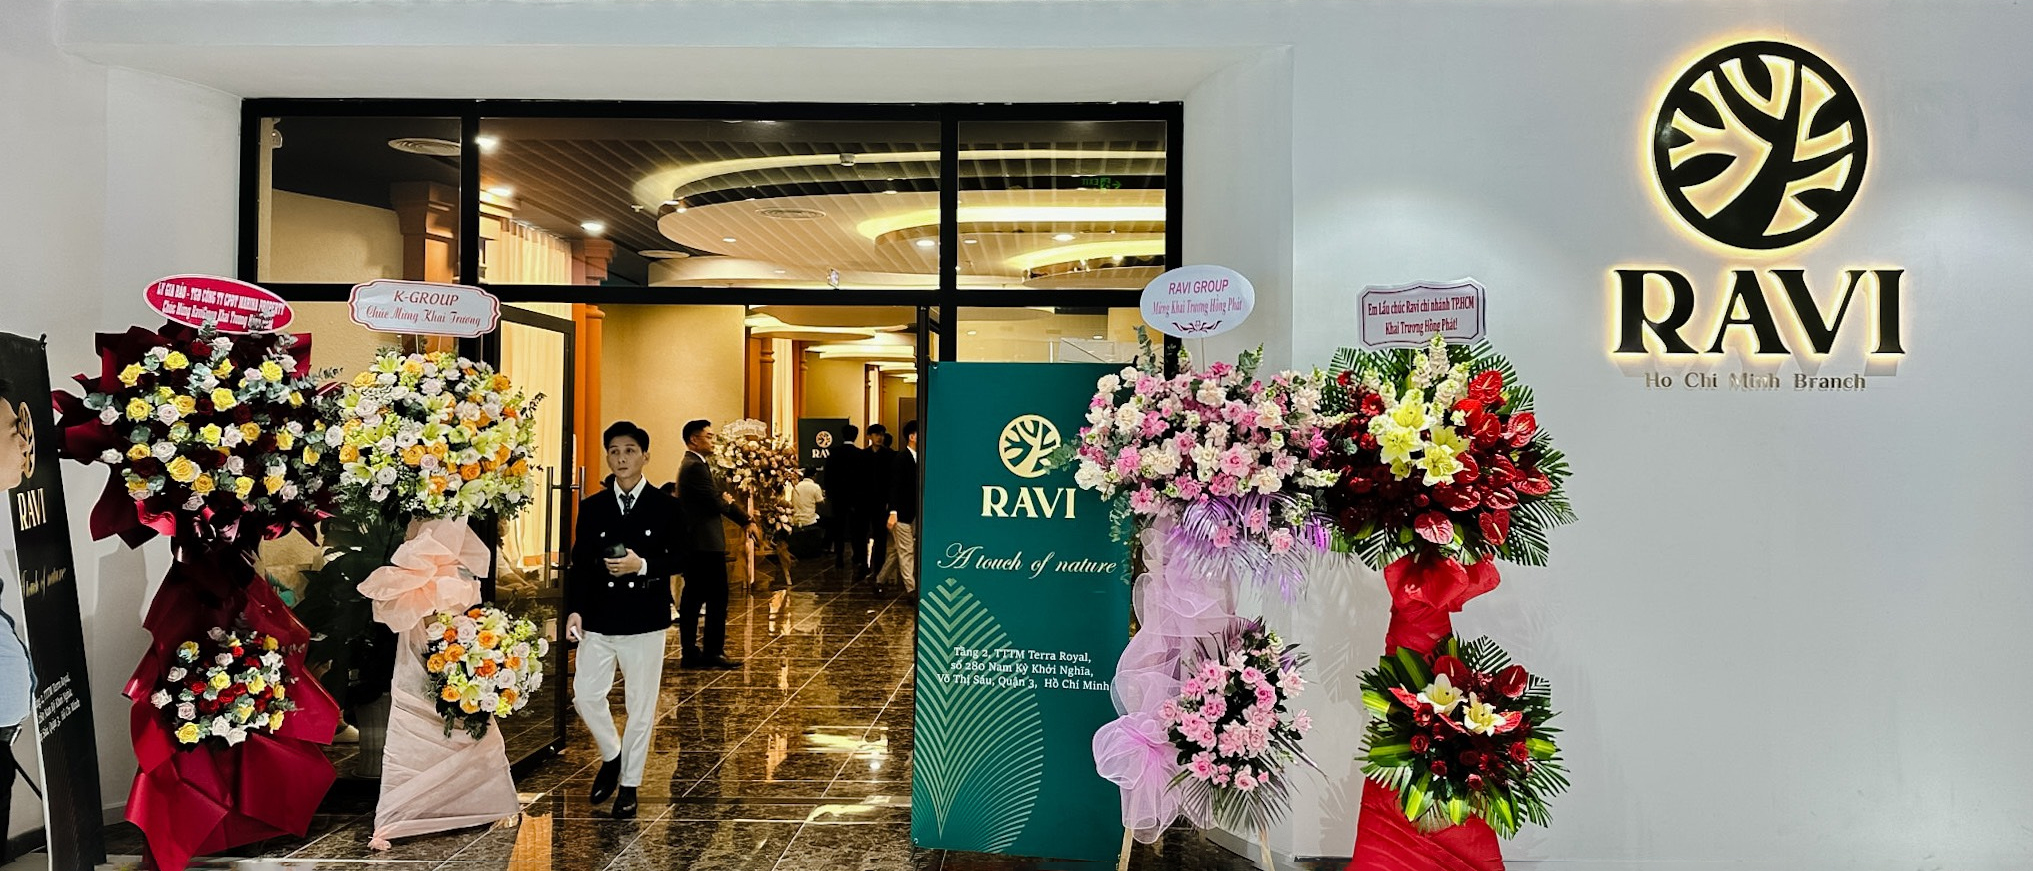 Những hình ảnh đáng nhớ tại Lễ Khai trương Văn phòng Ravi chi nhánh Hồ Chí Minh